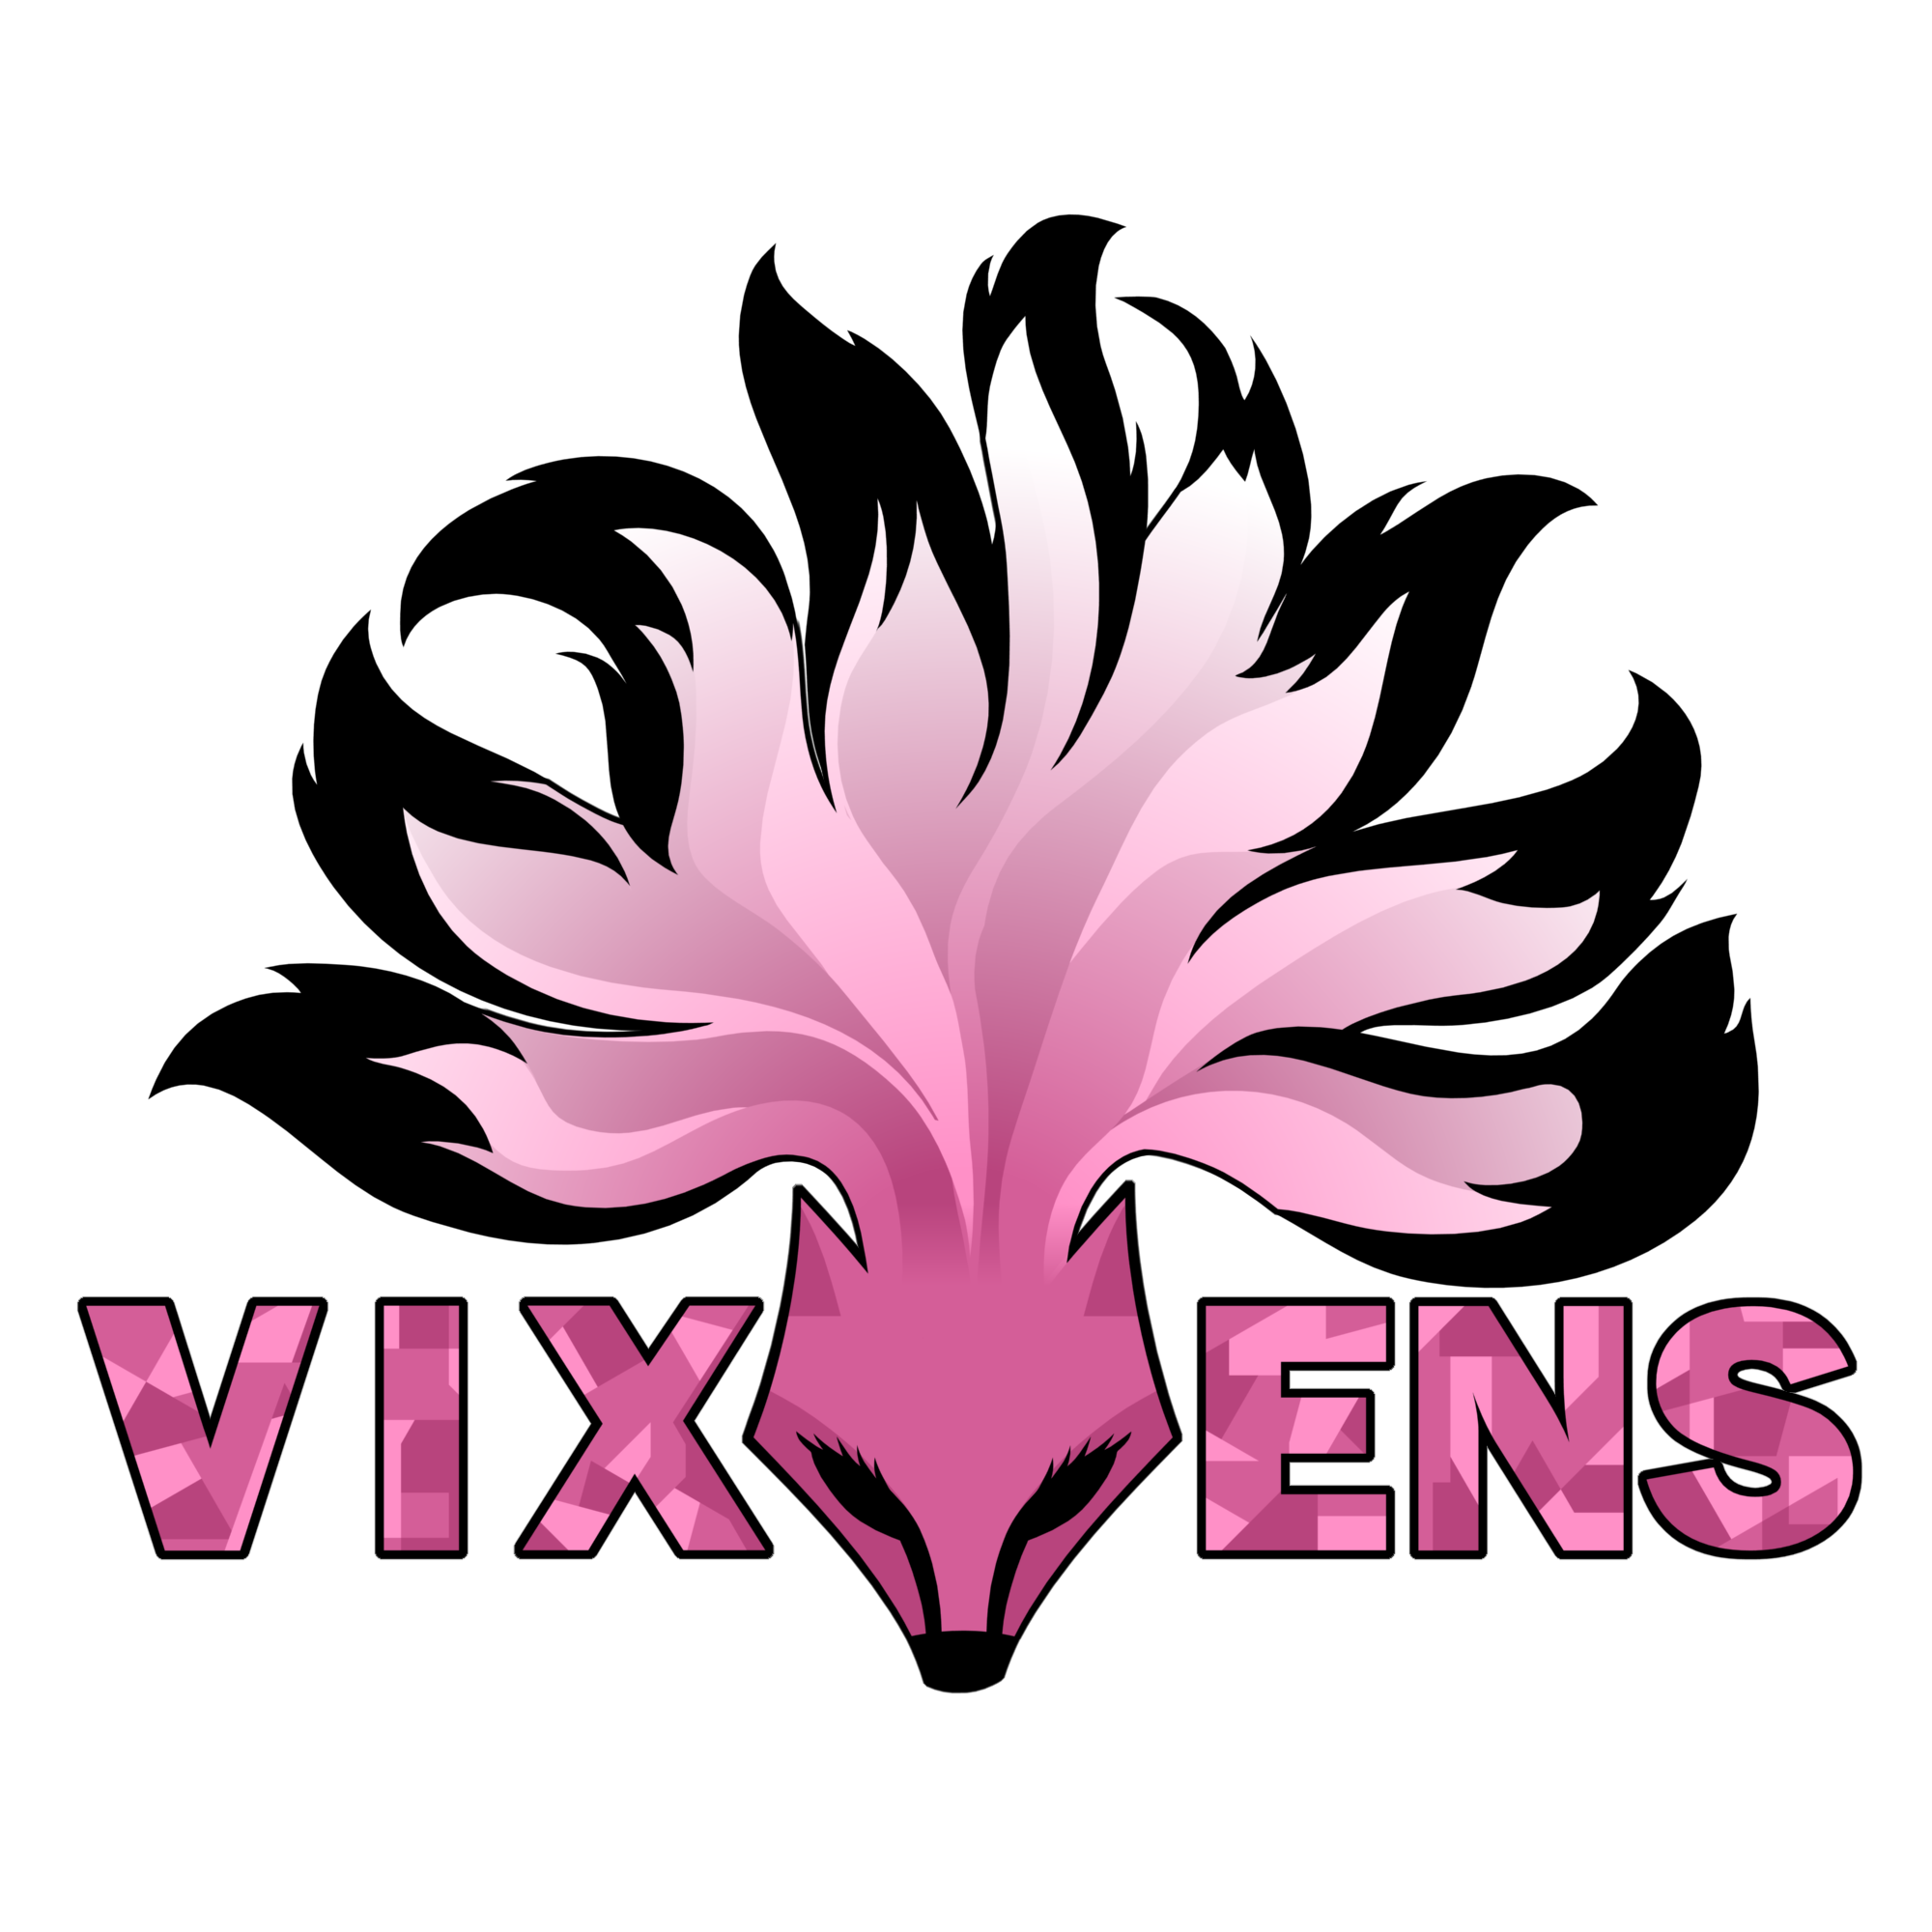 The VIXENS Logo